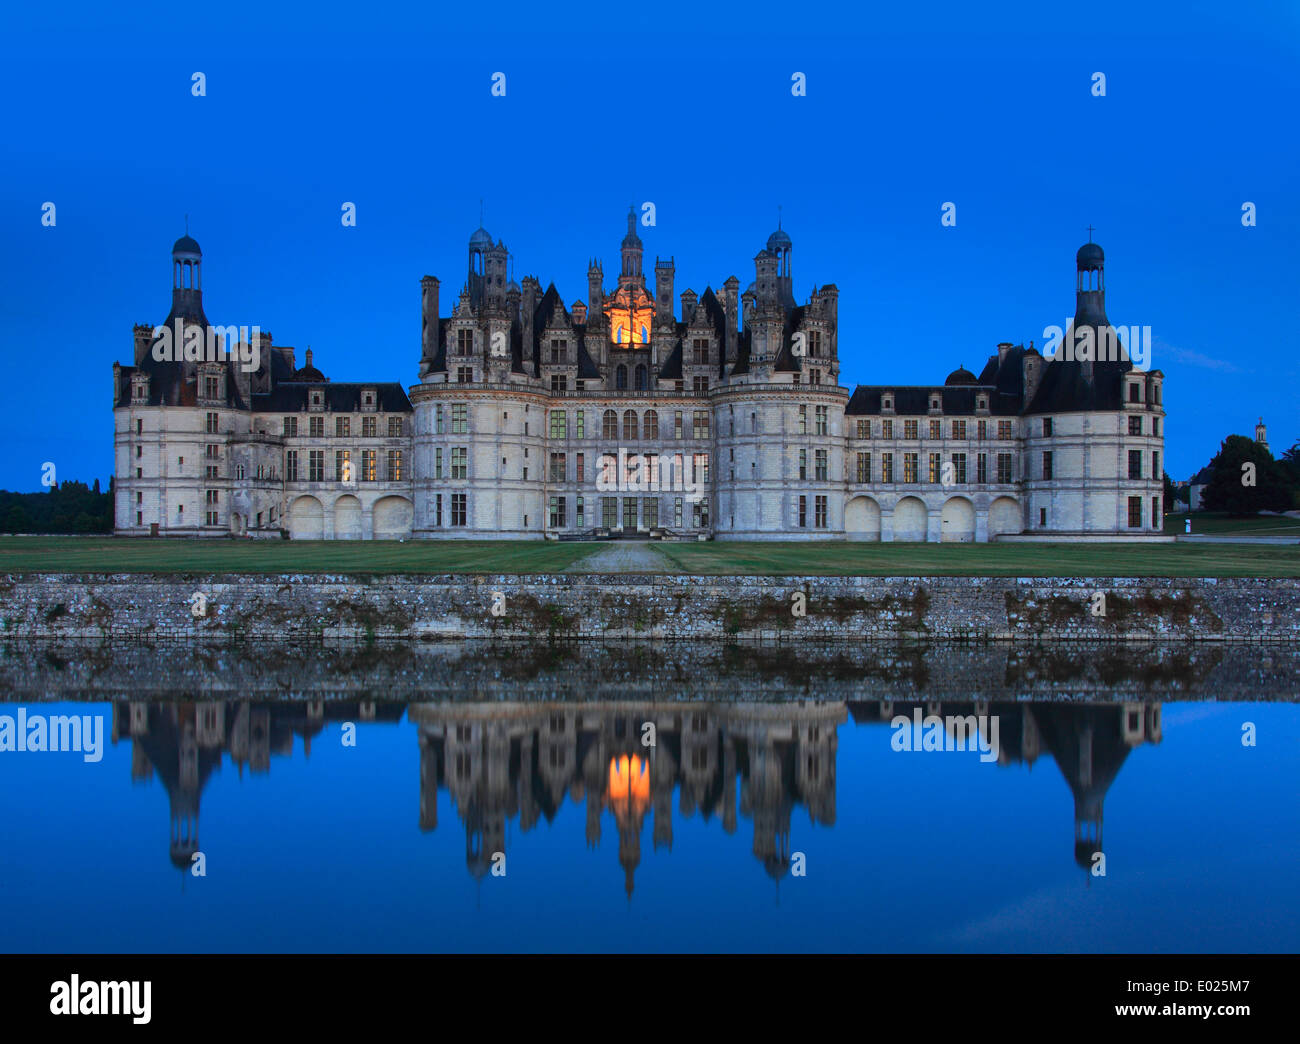 Photo de la façade nord du château de Chambord, ce qui reflète en soirée et de nuit l'éclairage, Chambord, Loire, France Banque D'Images